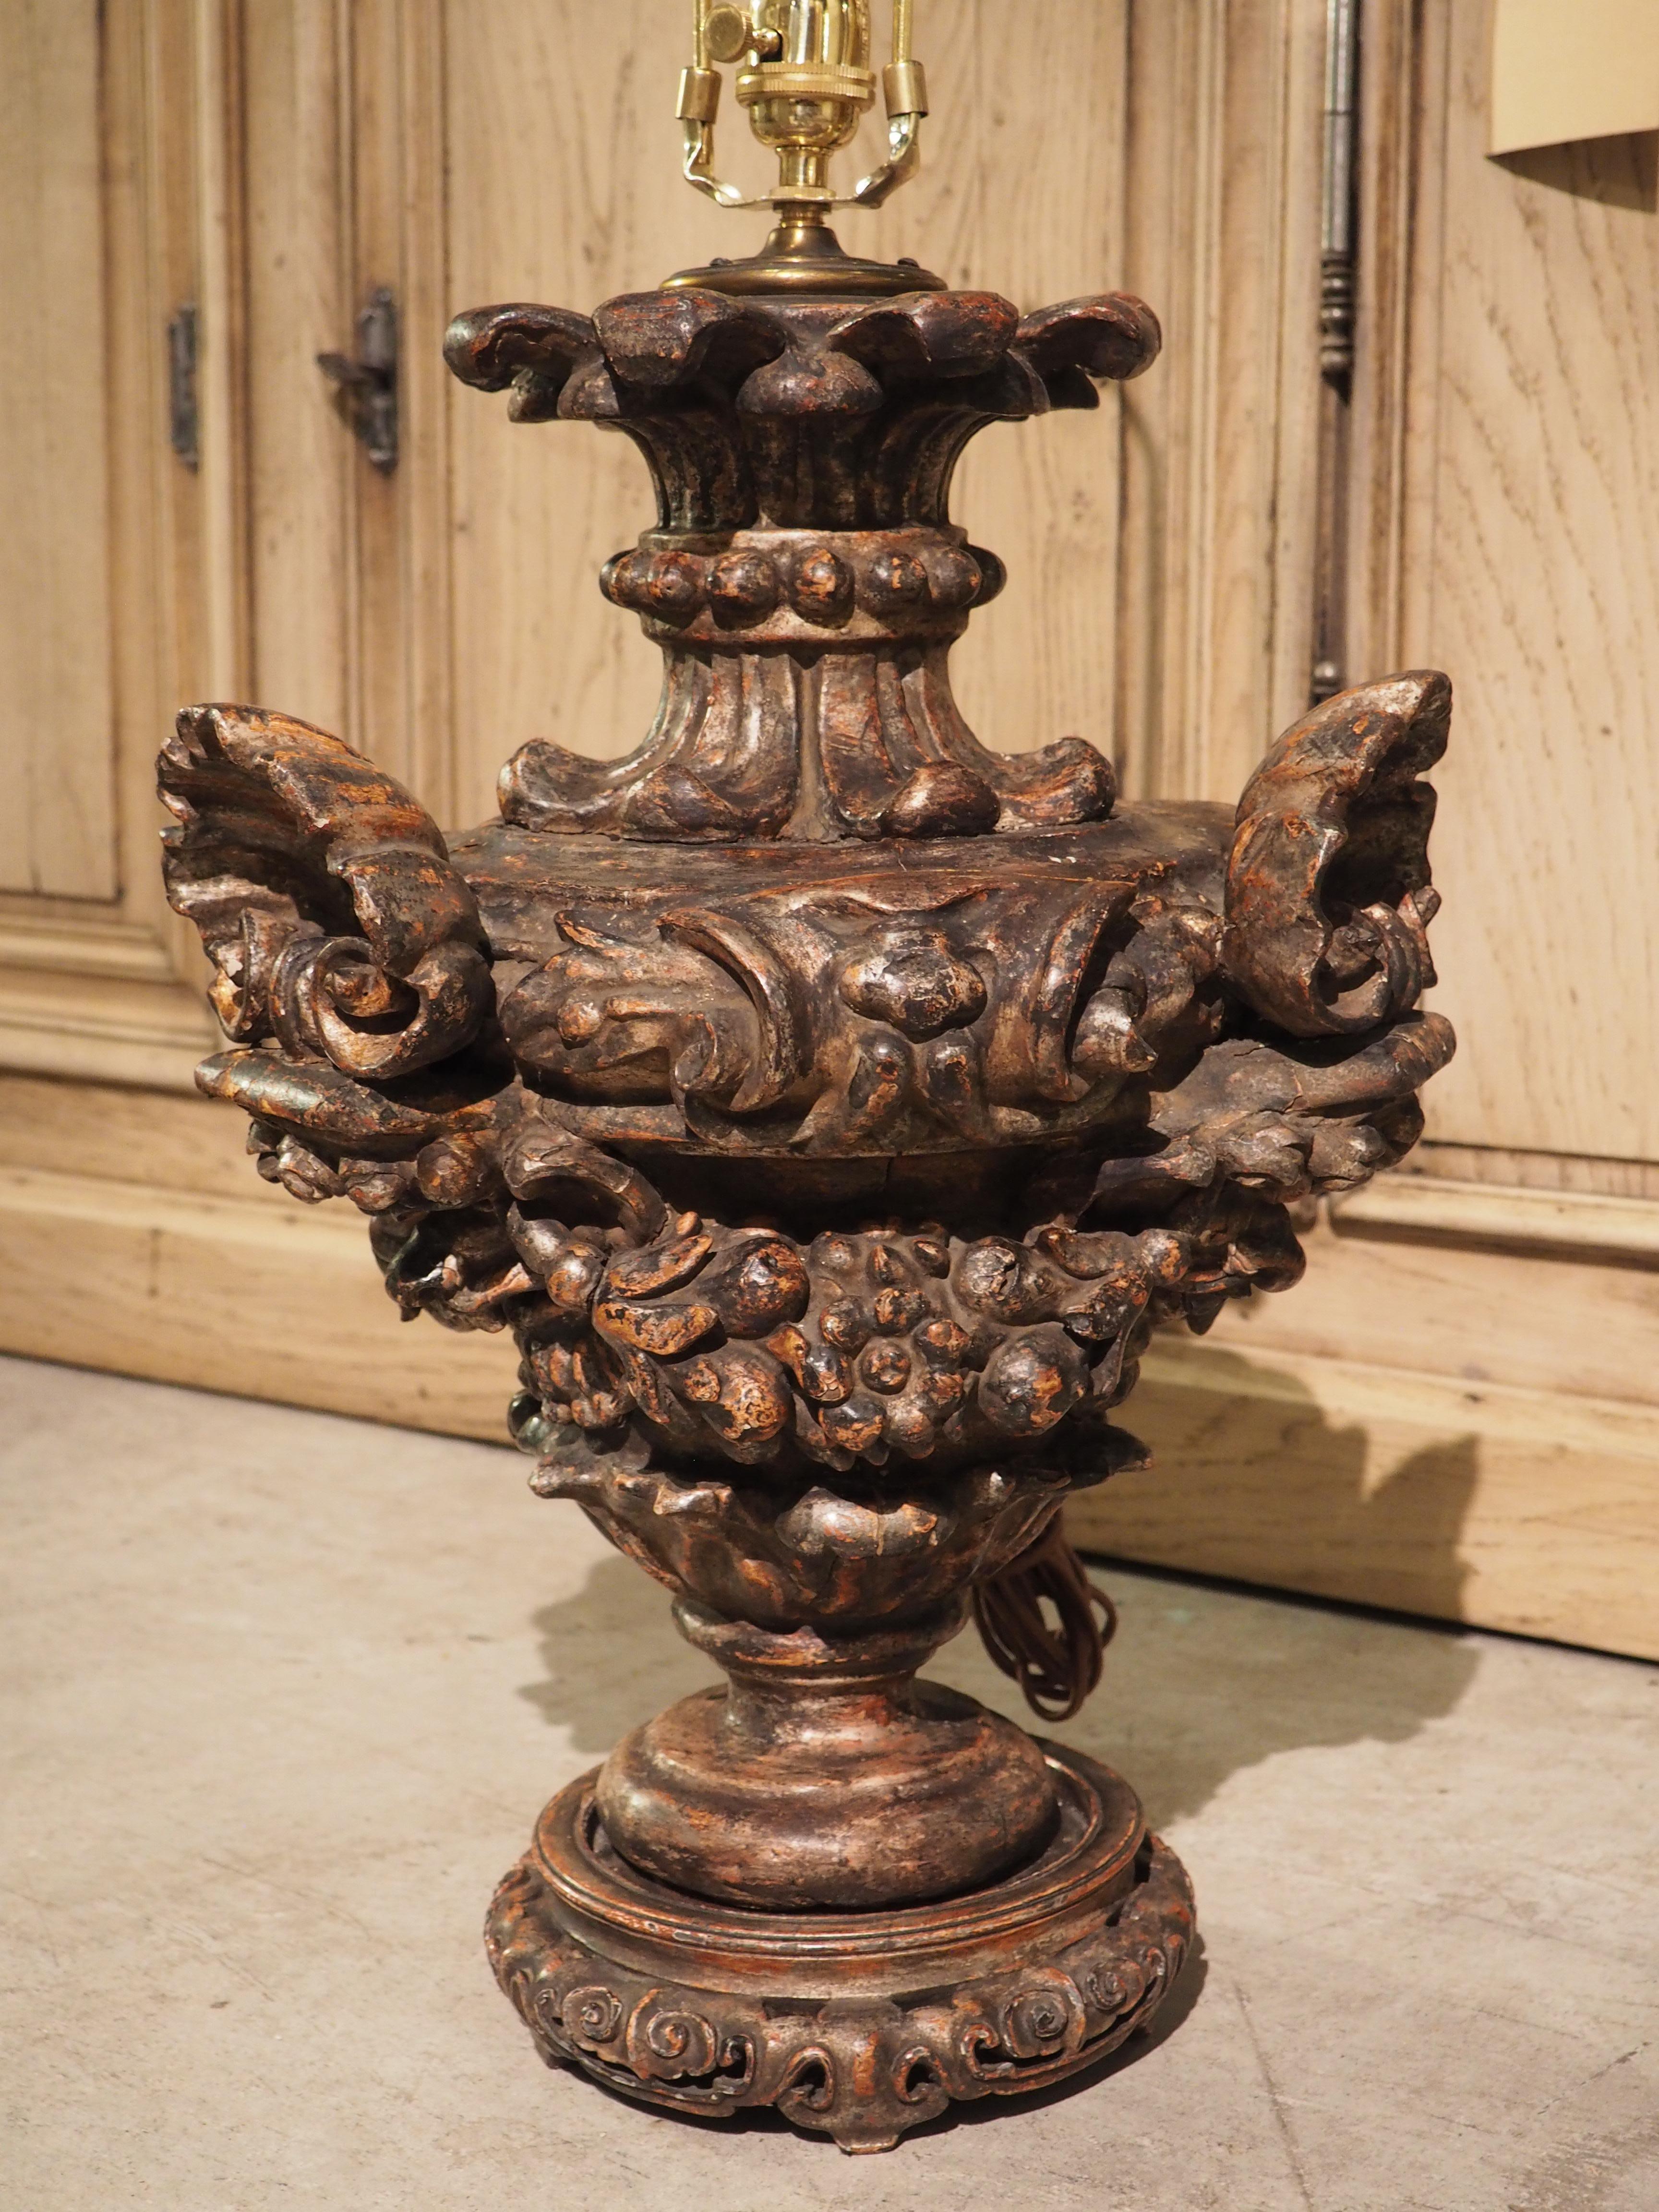 Diese stark geschnitzte polychrome Urne aus der Zeit um 1700 wurde in eine einzigartige Tischlampe mit einem cremefarbenen Schirm umgewandelt, der entlang des Randes mit schwarzen S-Bändern verziert ist. Drei Muschelschalen und drei Voluten, die